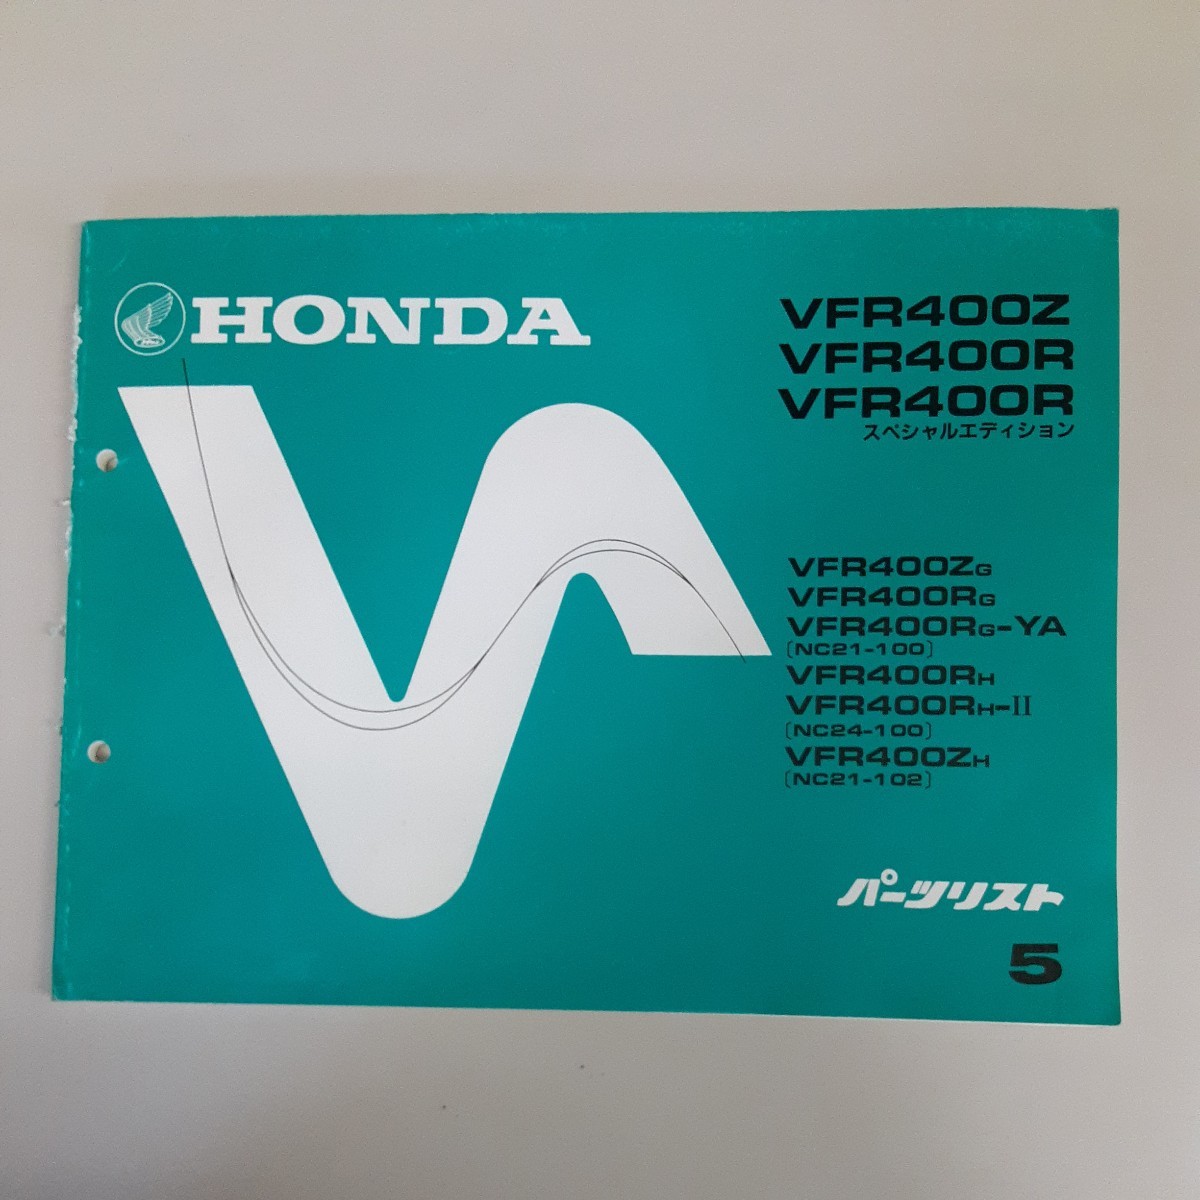  Honda parts list VFR400Z VFR400R etc. 